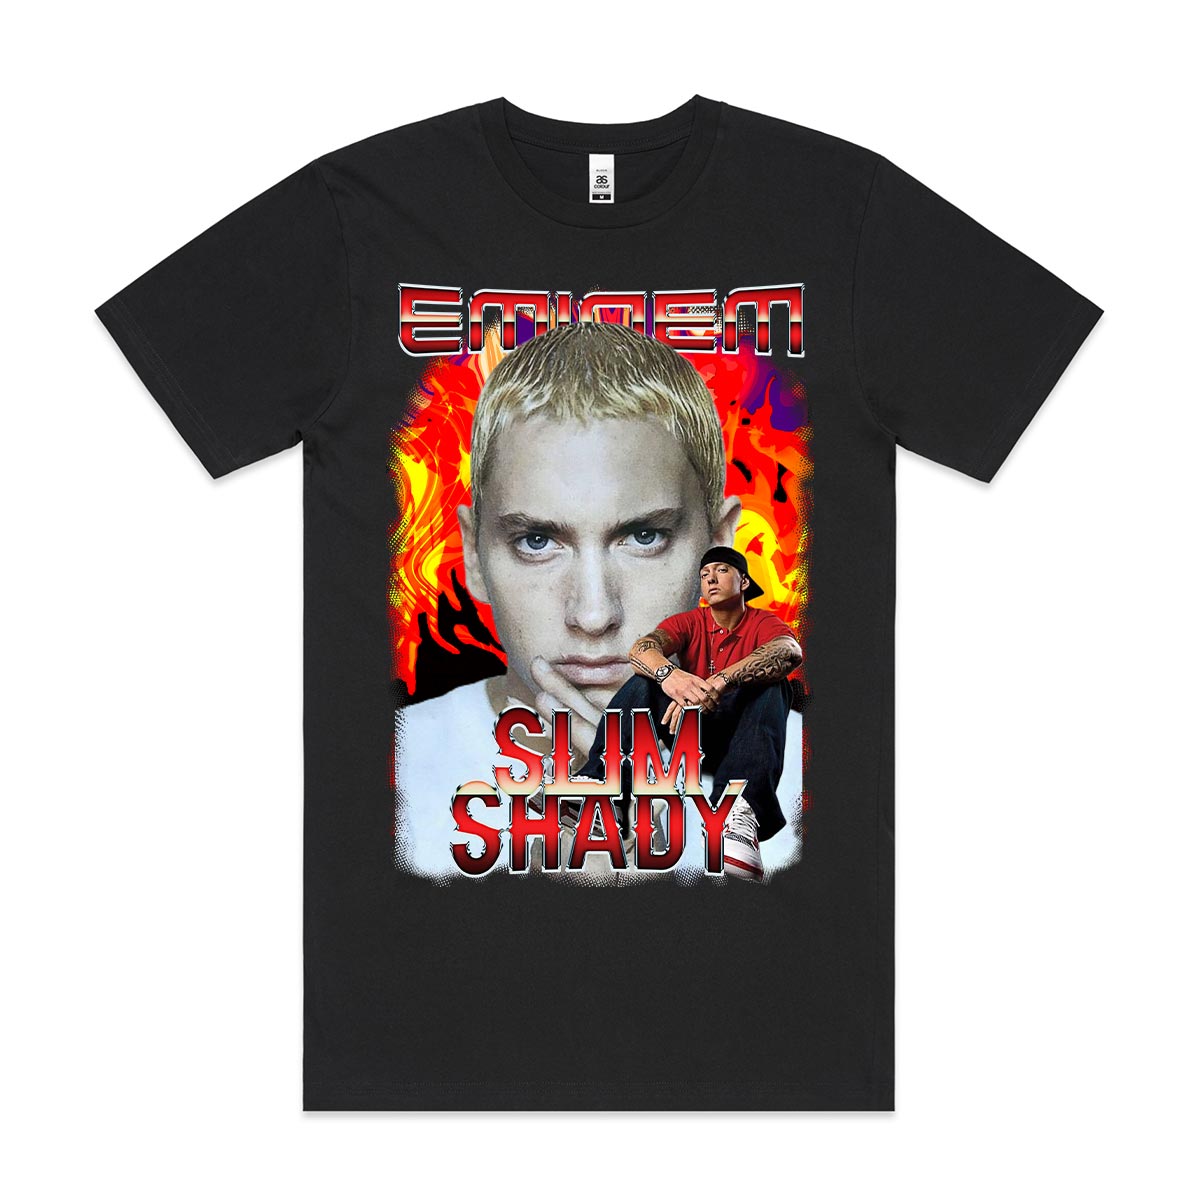 Eminem 02 T-Shirt Rapper Family Fan Music Hip Hop Culture